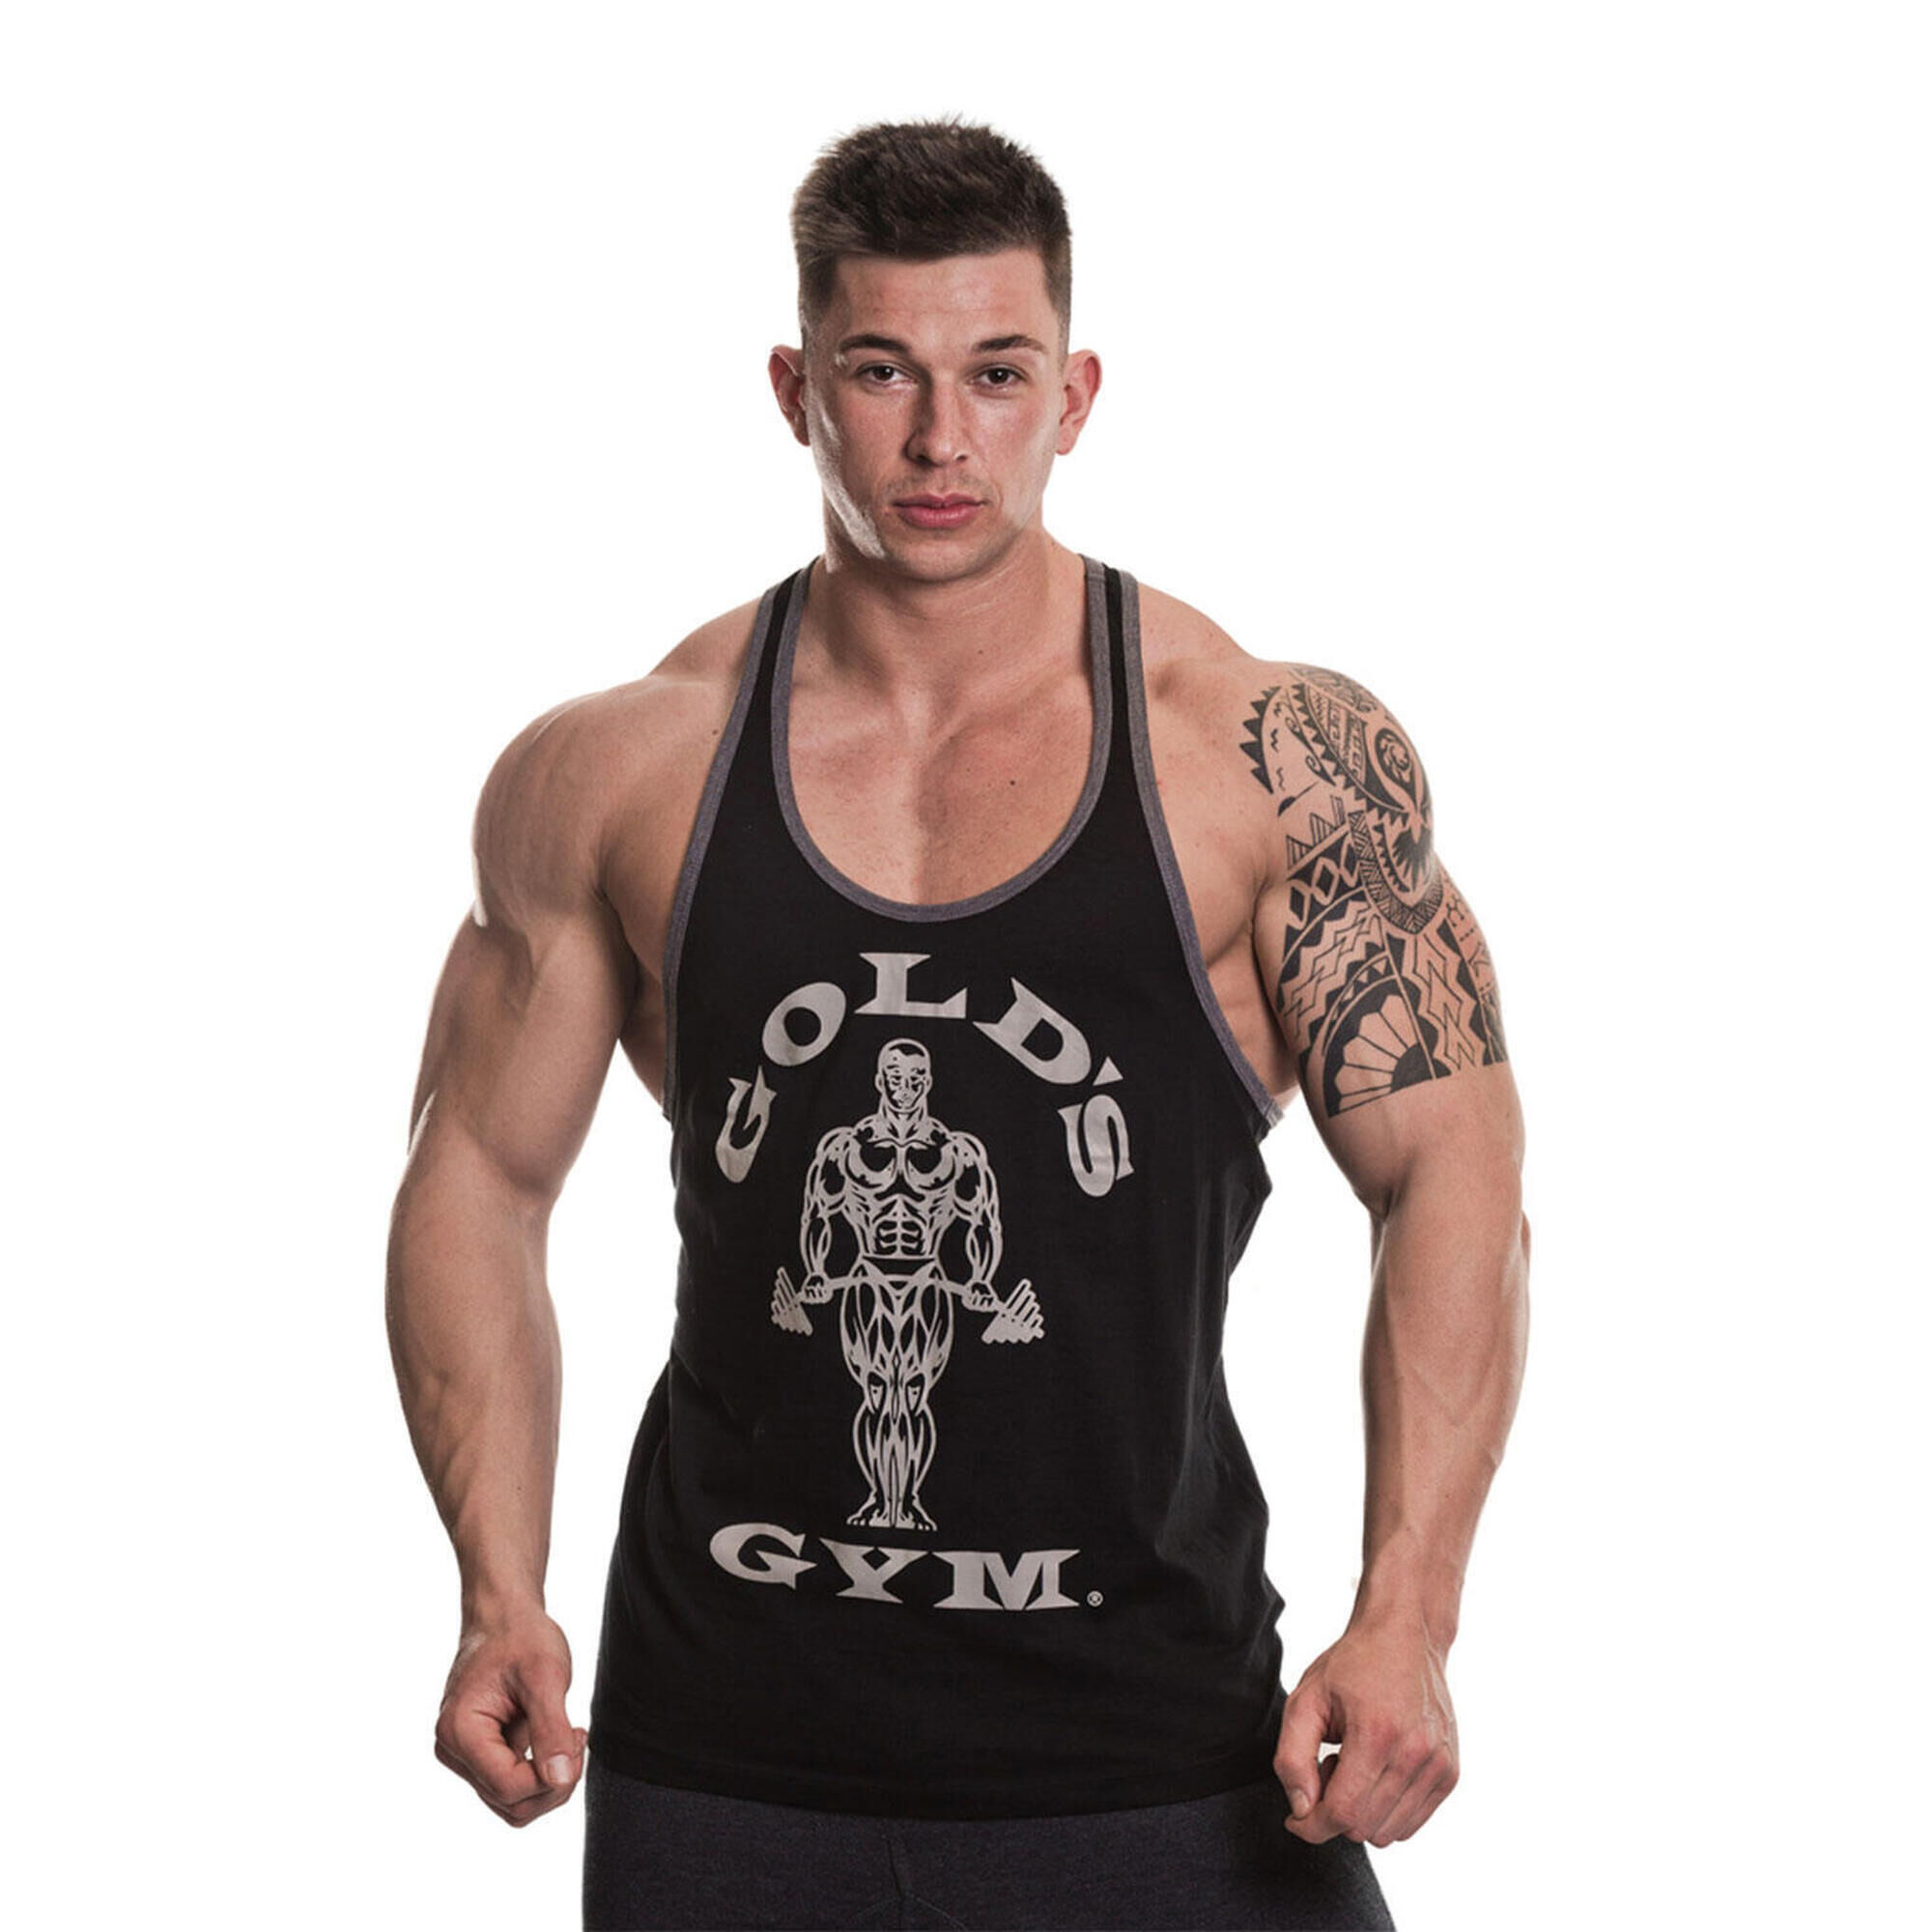 GOLD'S GYM Men's Gold's Gym Contrast Muscle Joe Print Stringer Vest